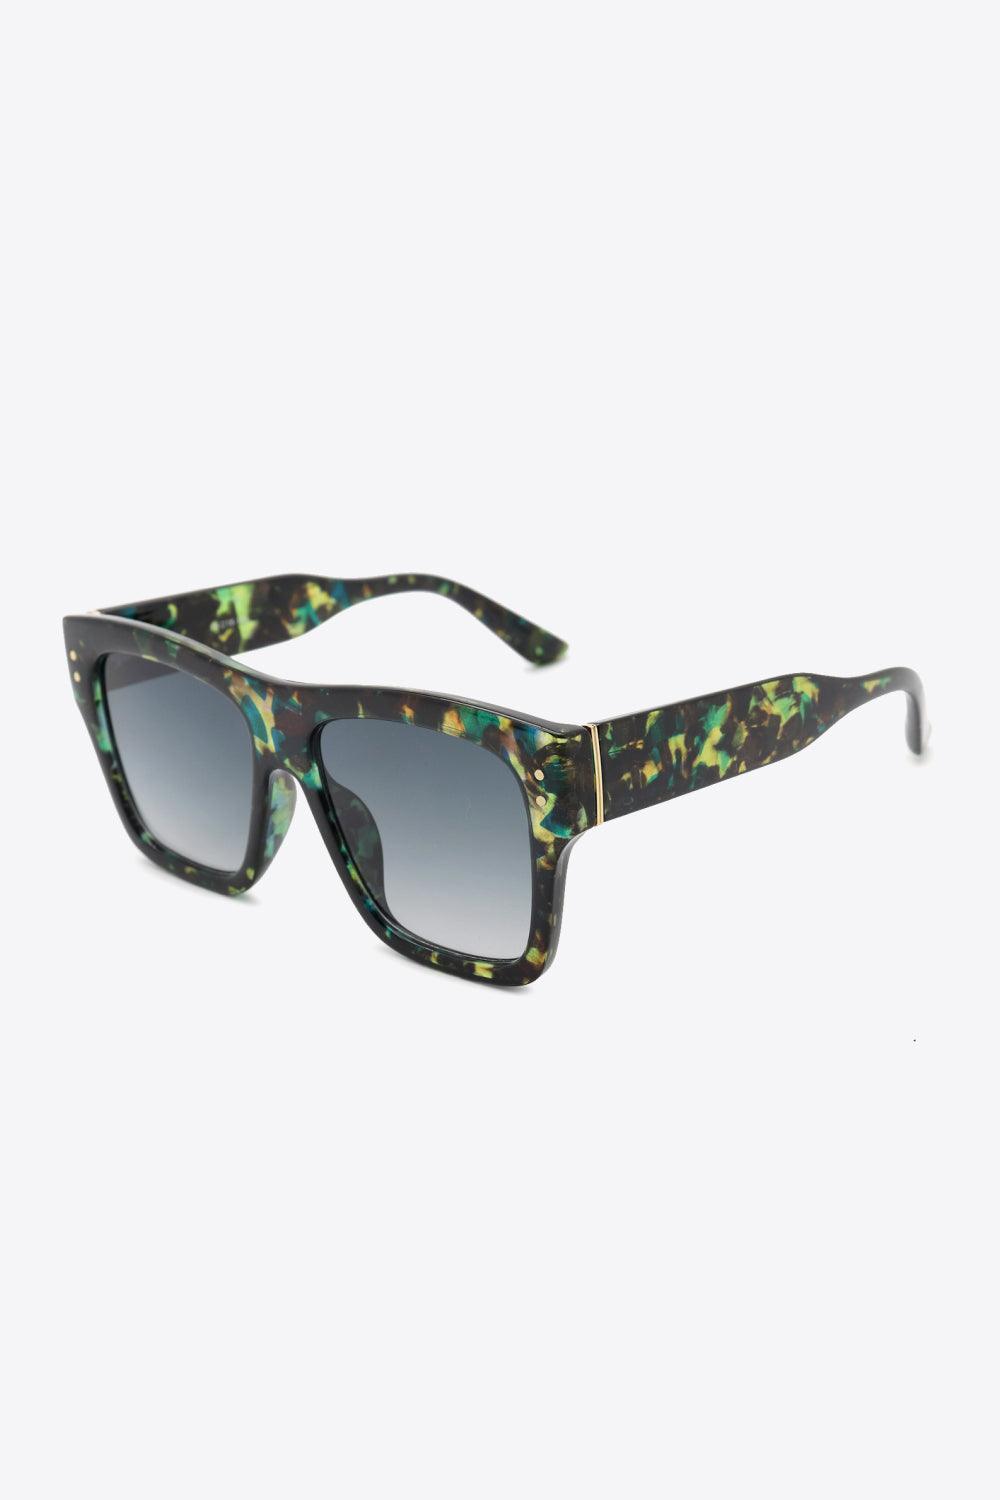 Secure Fit Patterned Square Polycarbonate Sunglasses - MXSTUDIO.COM